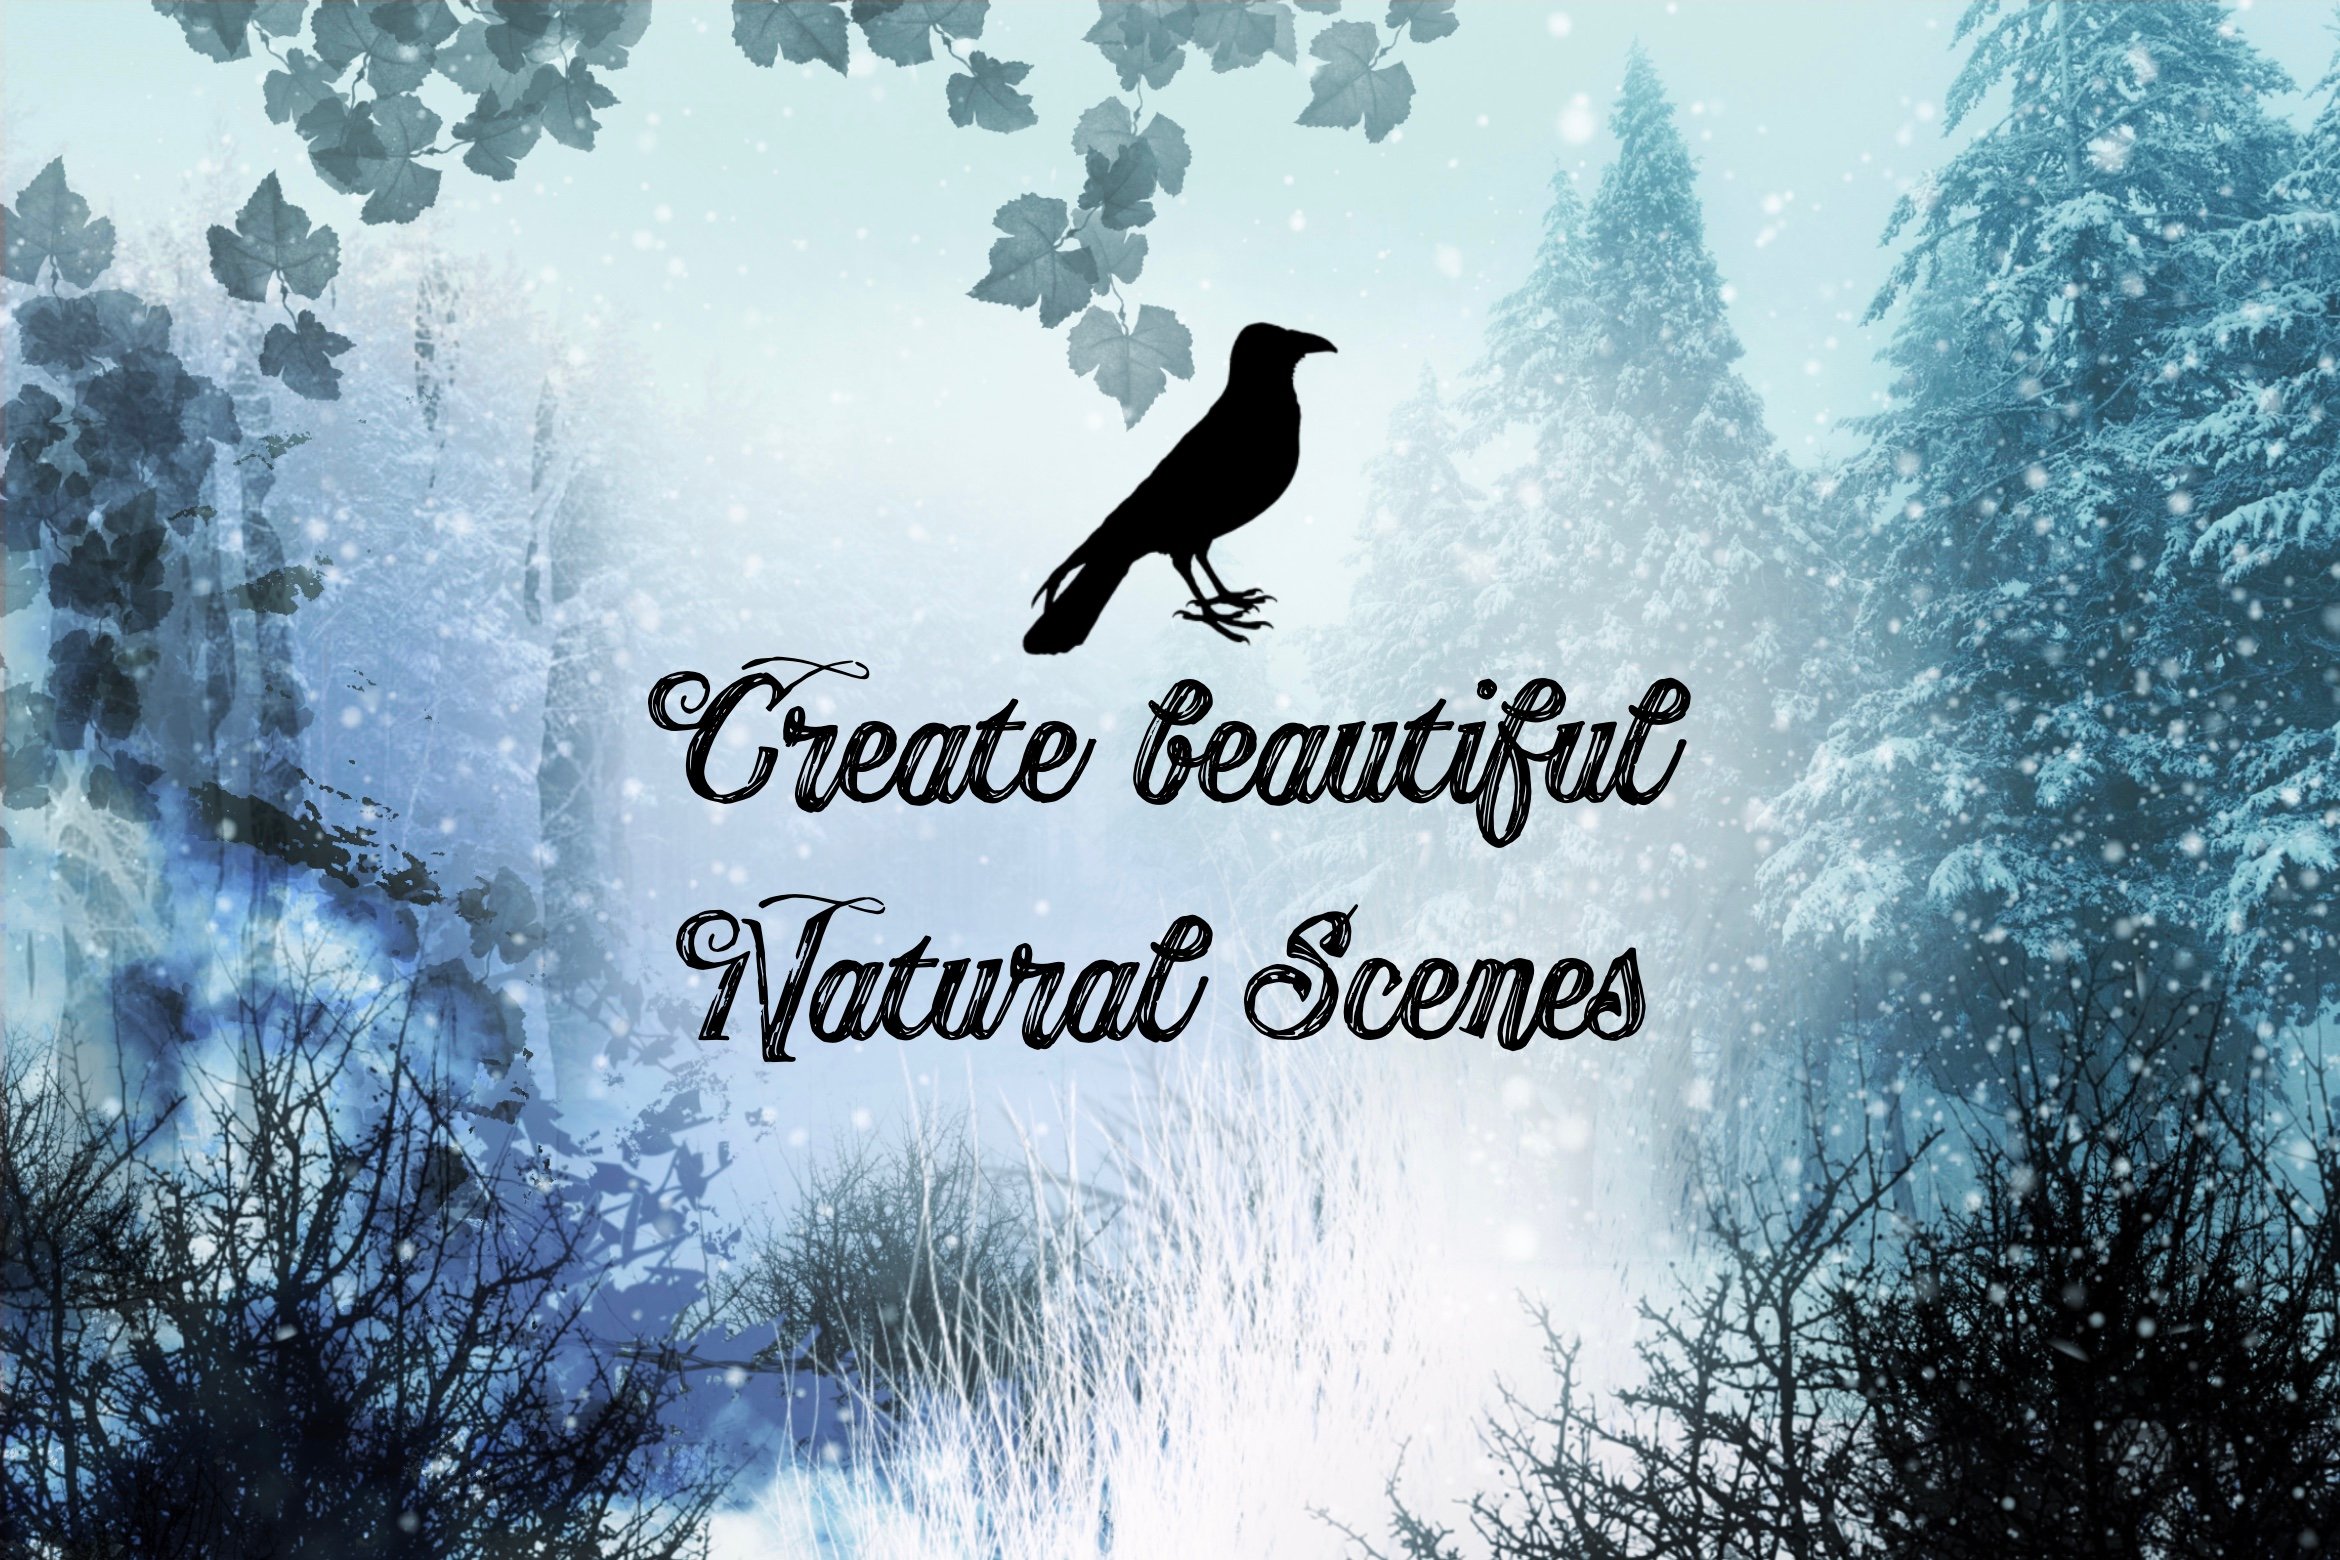 Create beautiful natural scenes.